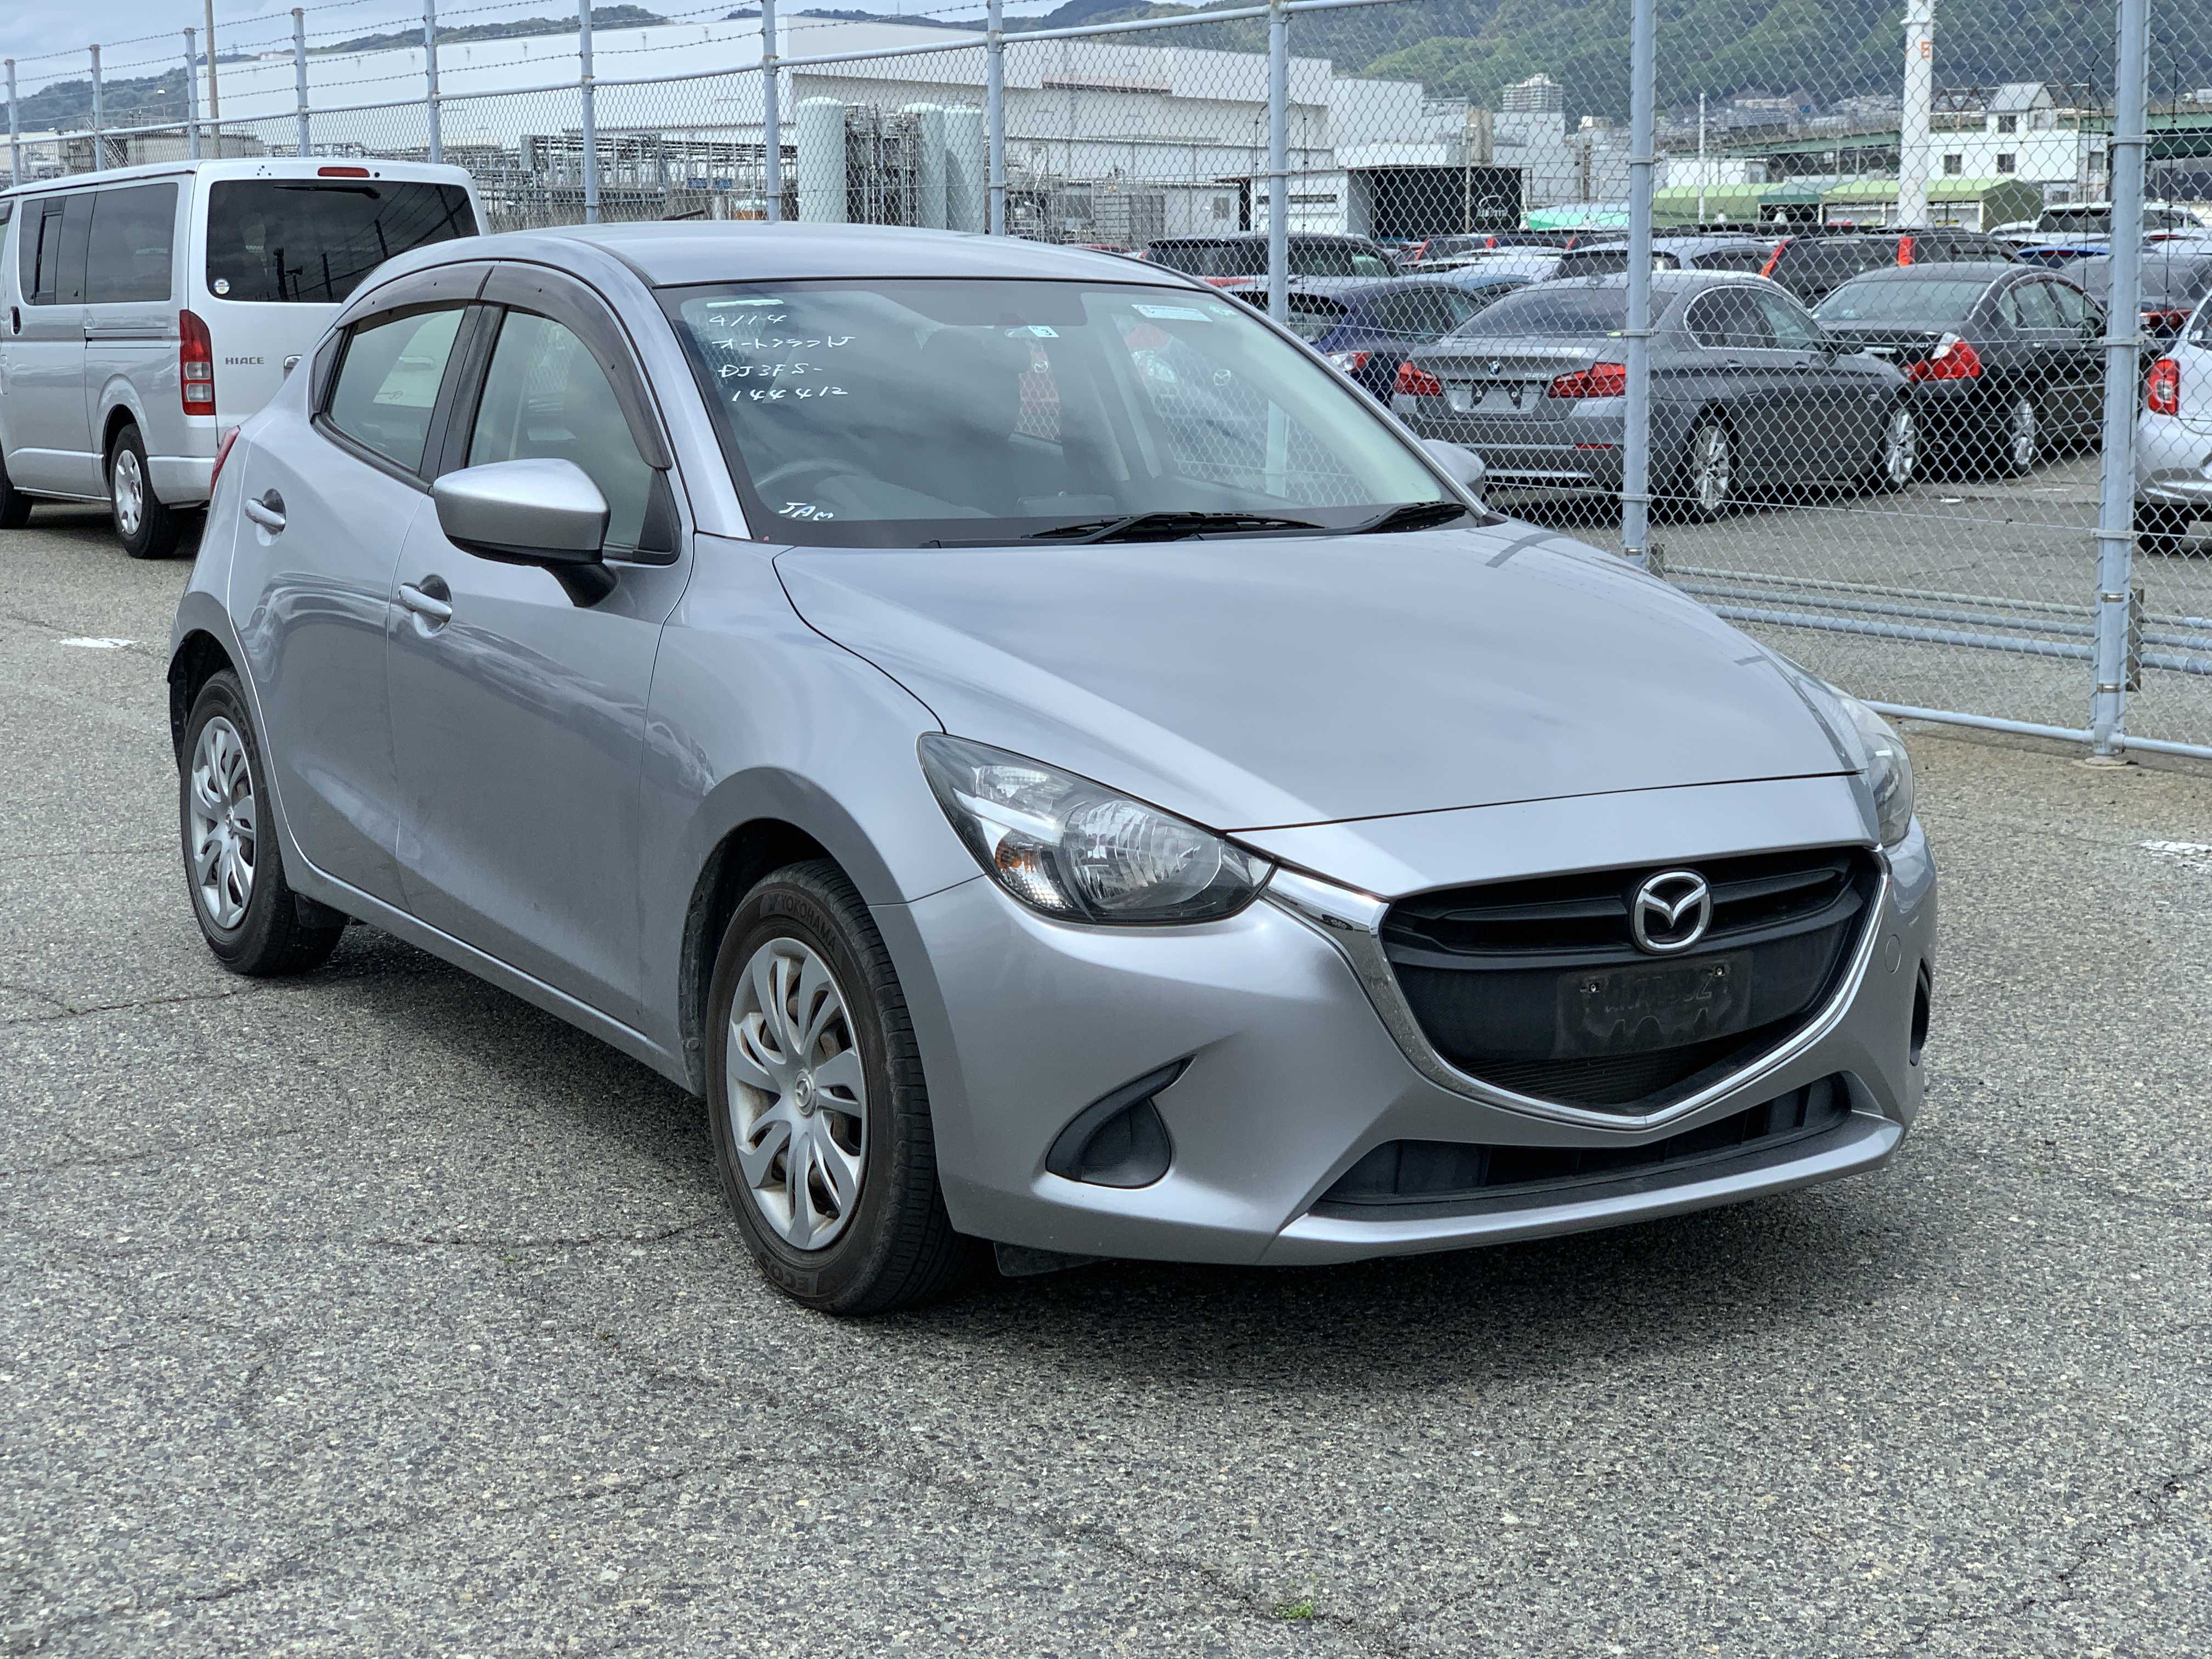 Mazda Demio 2016